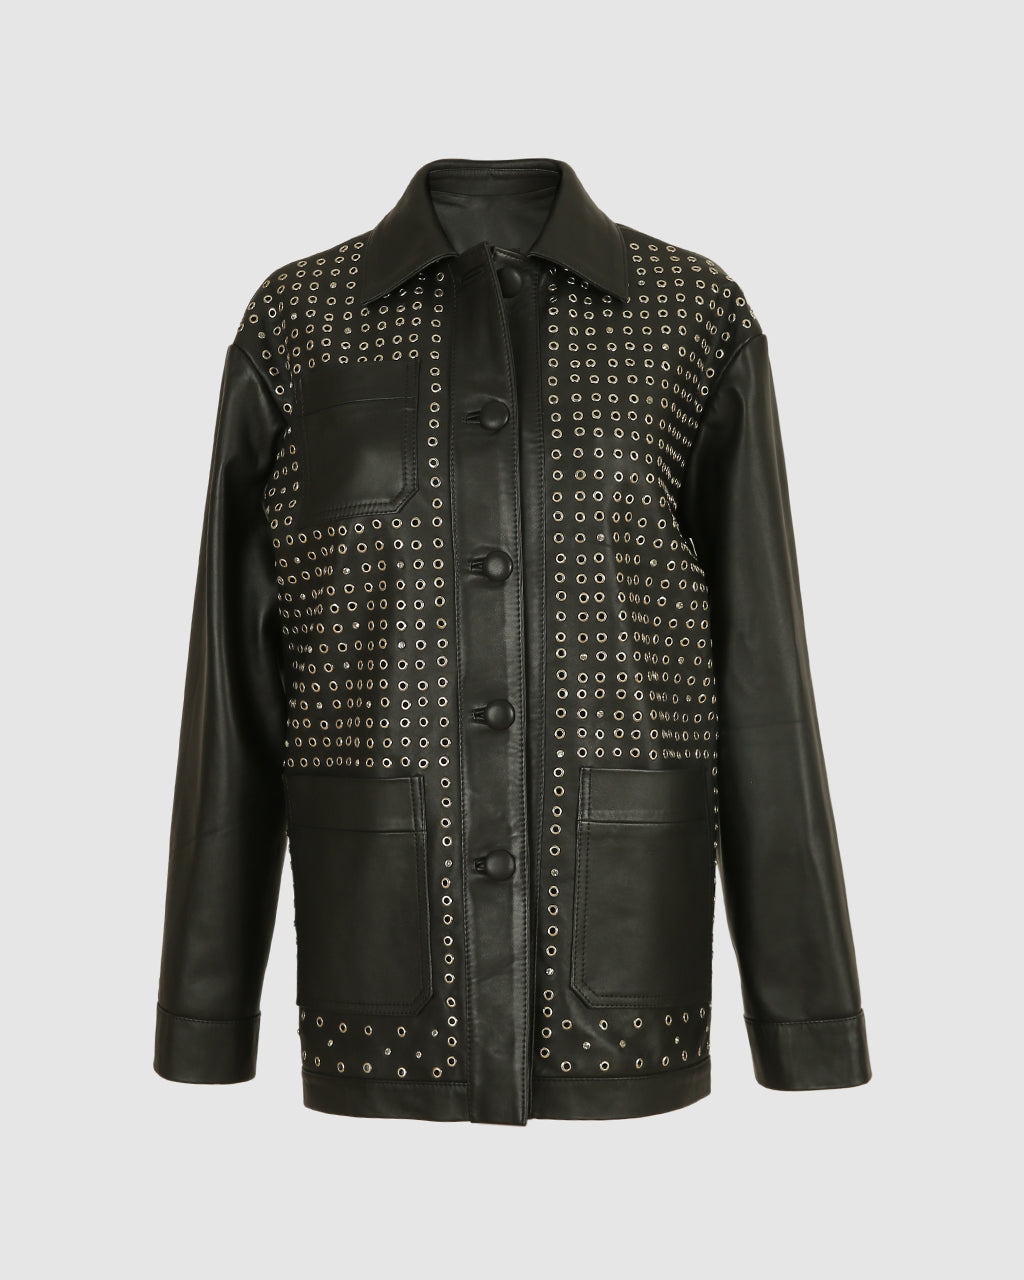 Karri Leather Jacket Black